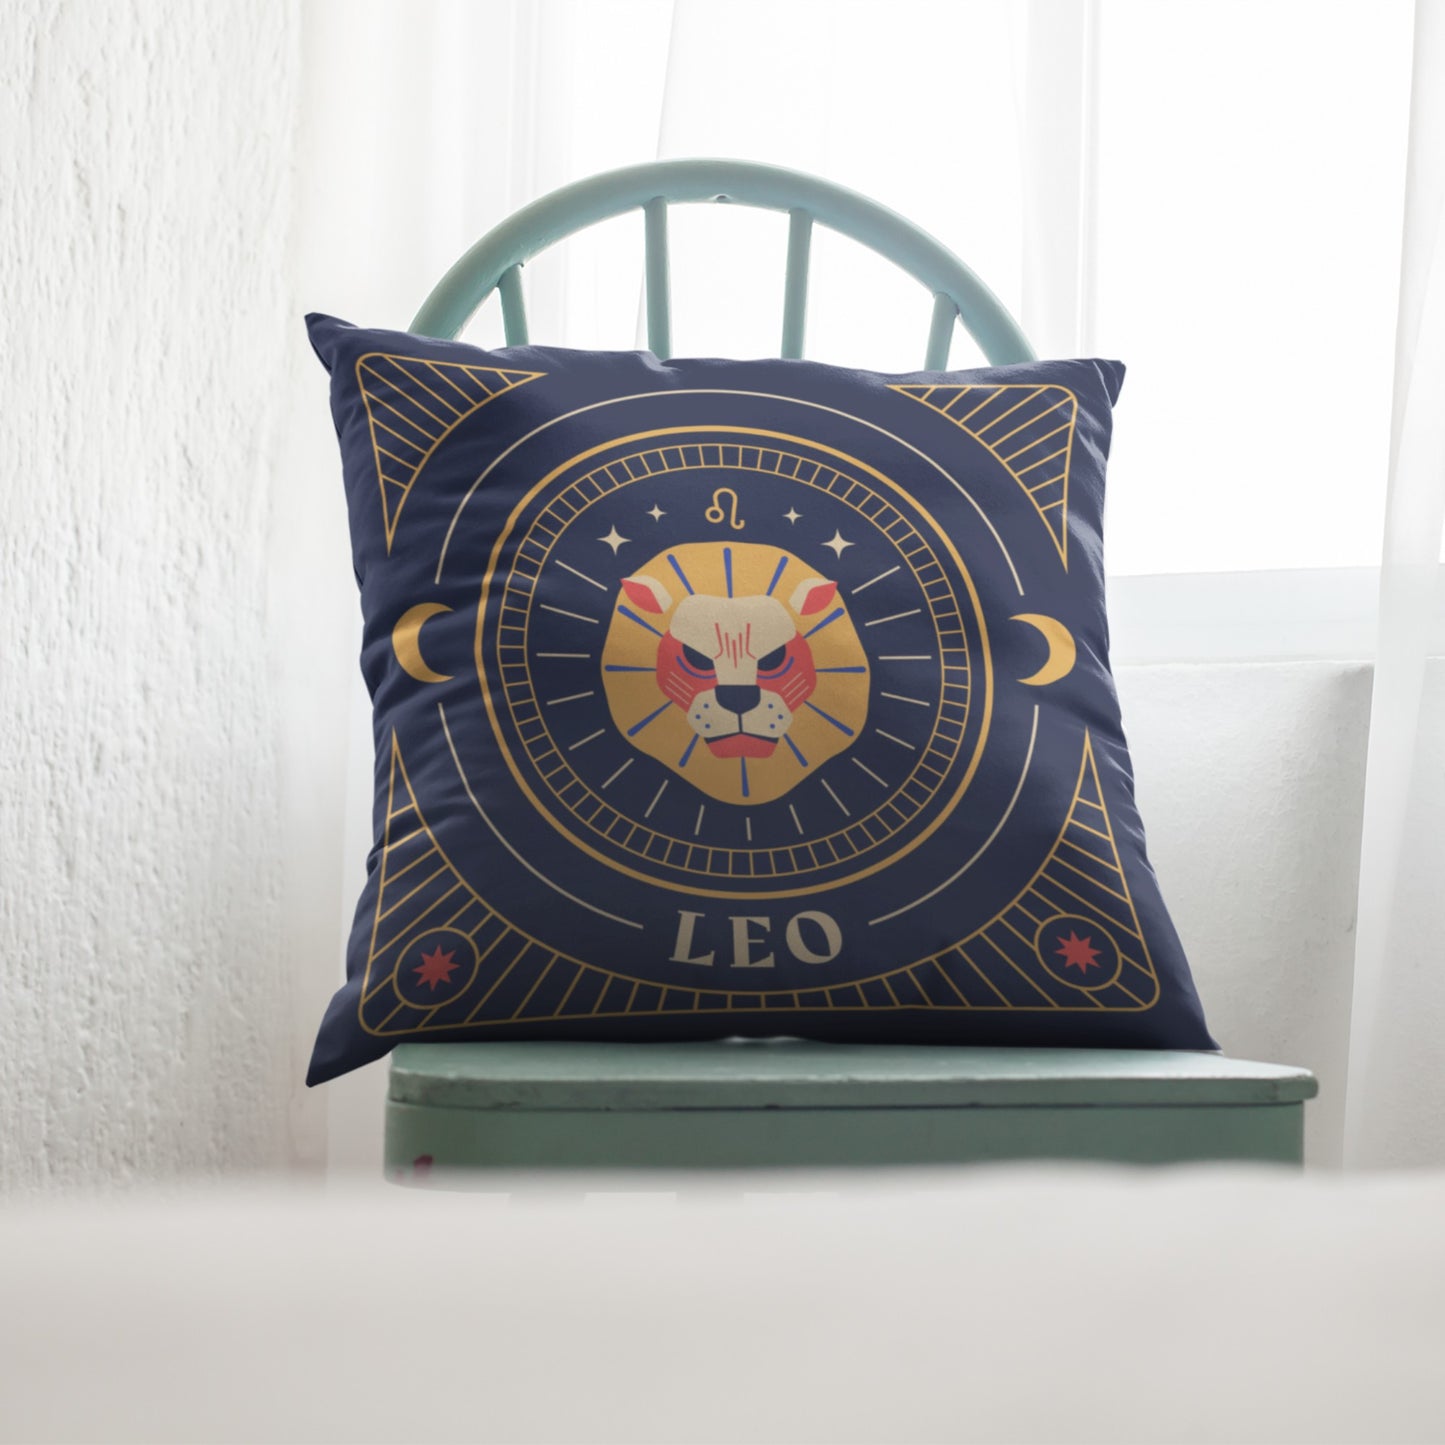 Homeezone's Leo Horoscope Theme Pillow